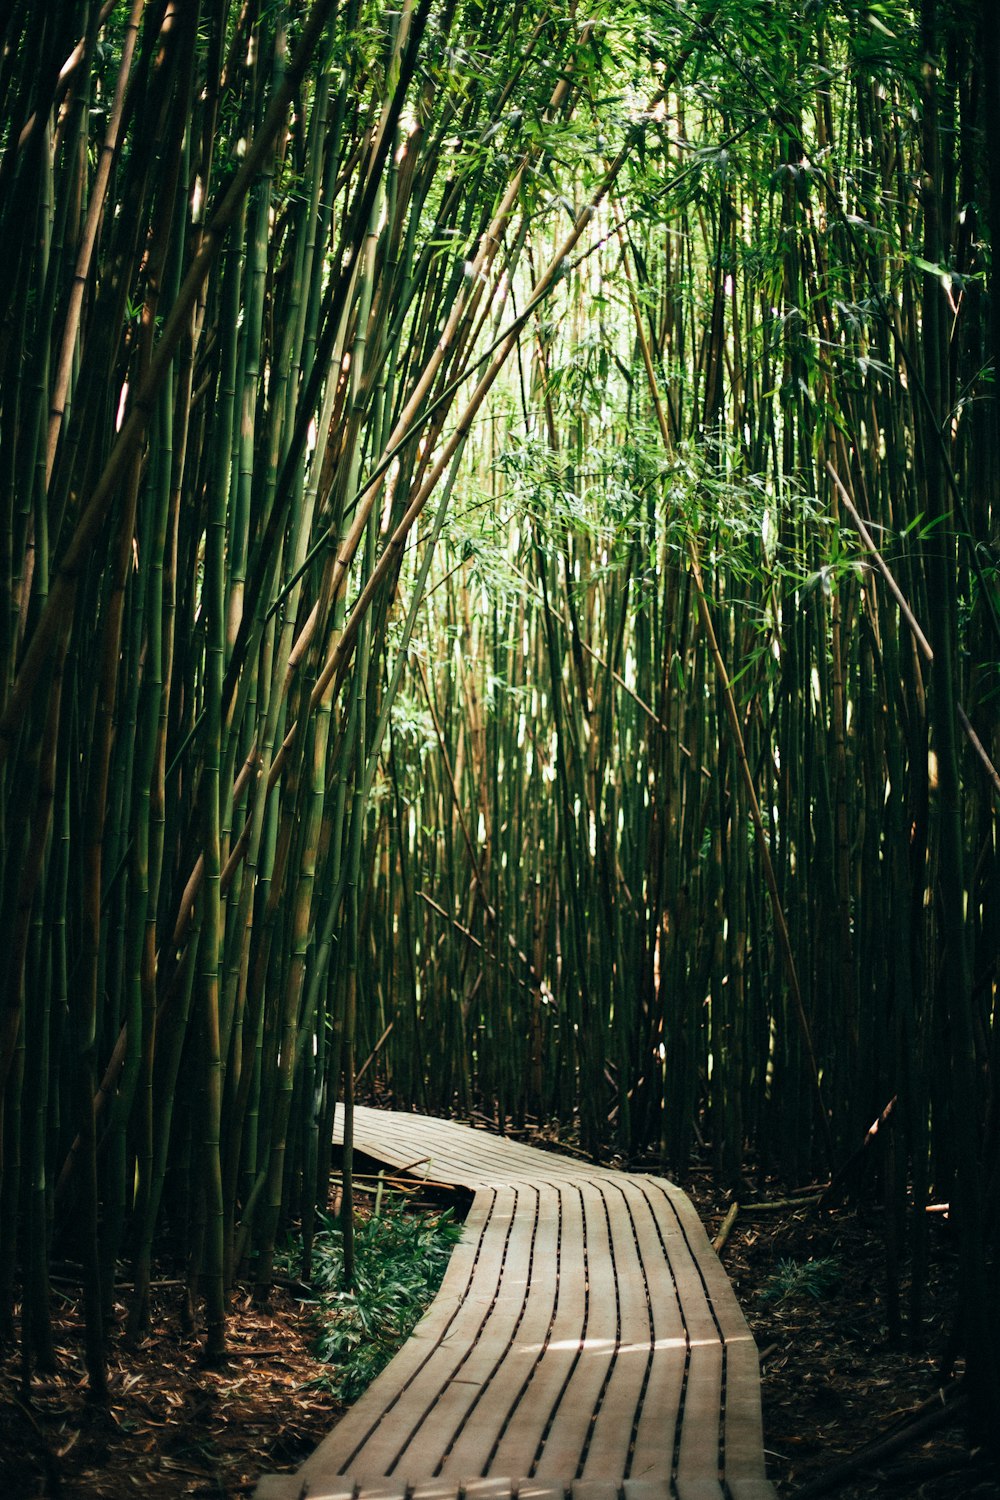 caminho marrom cercado por bambus verdes